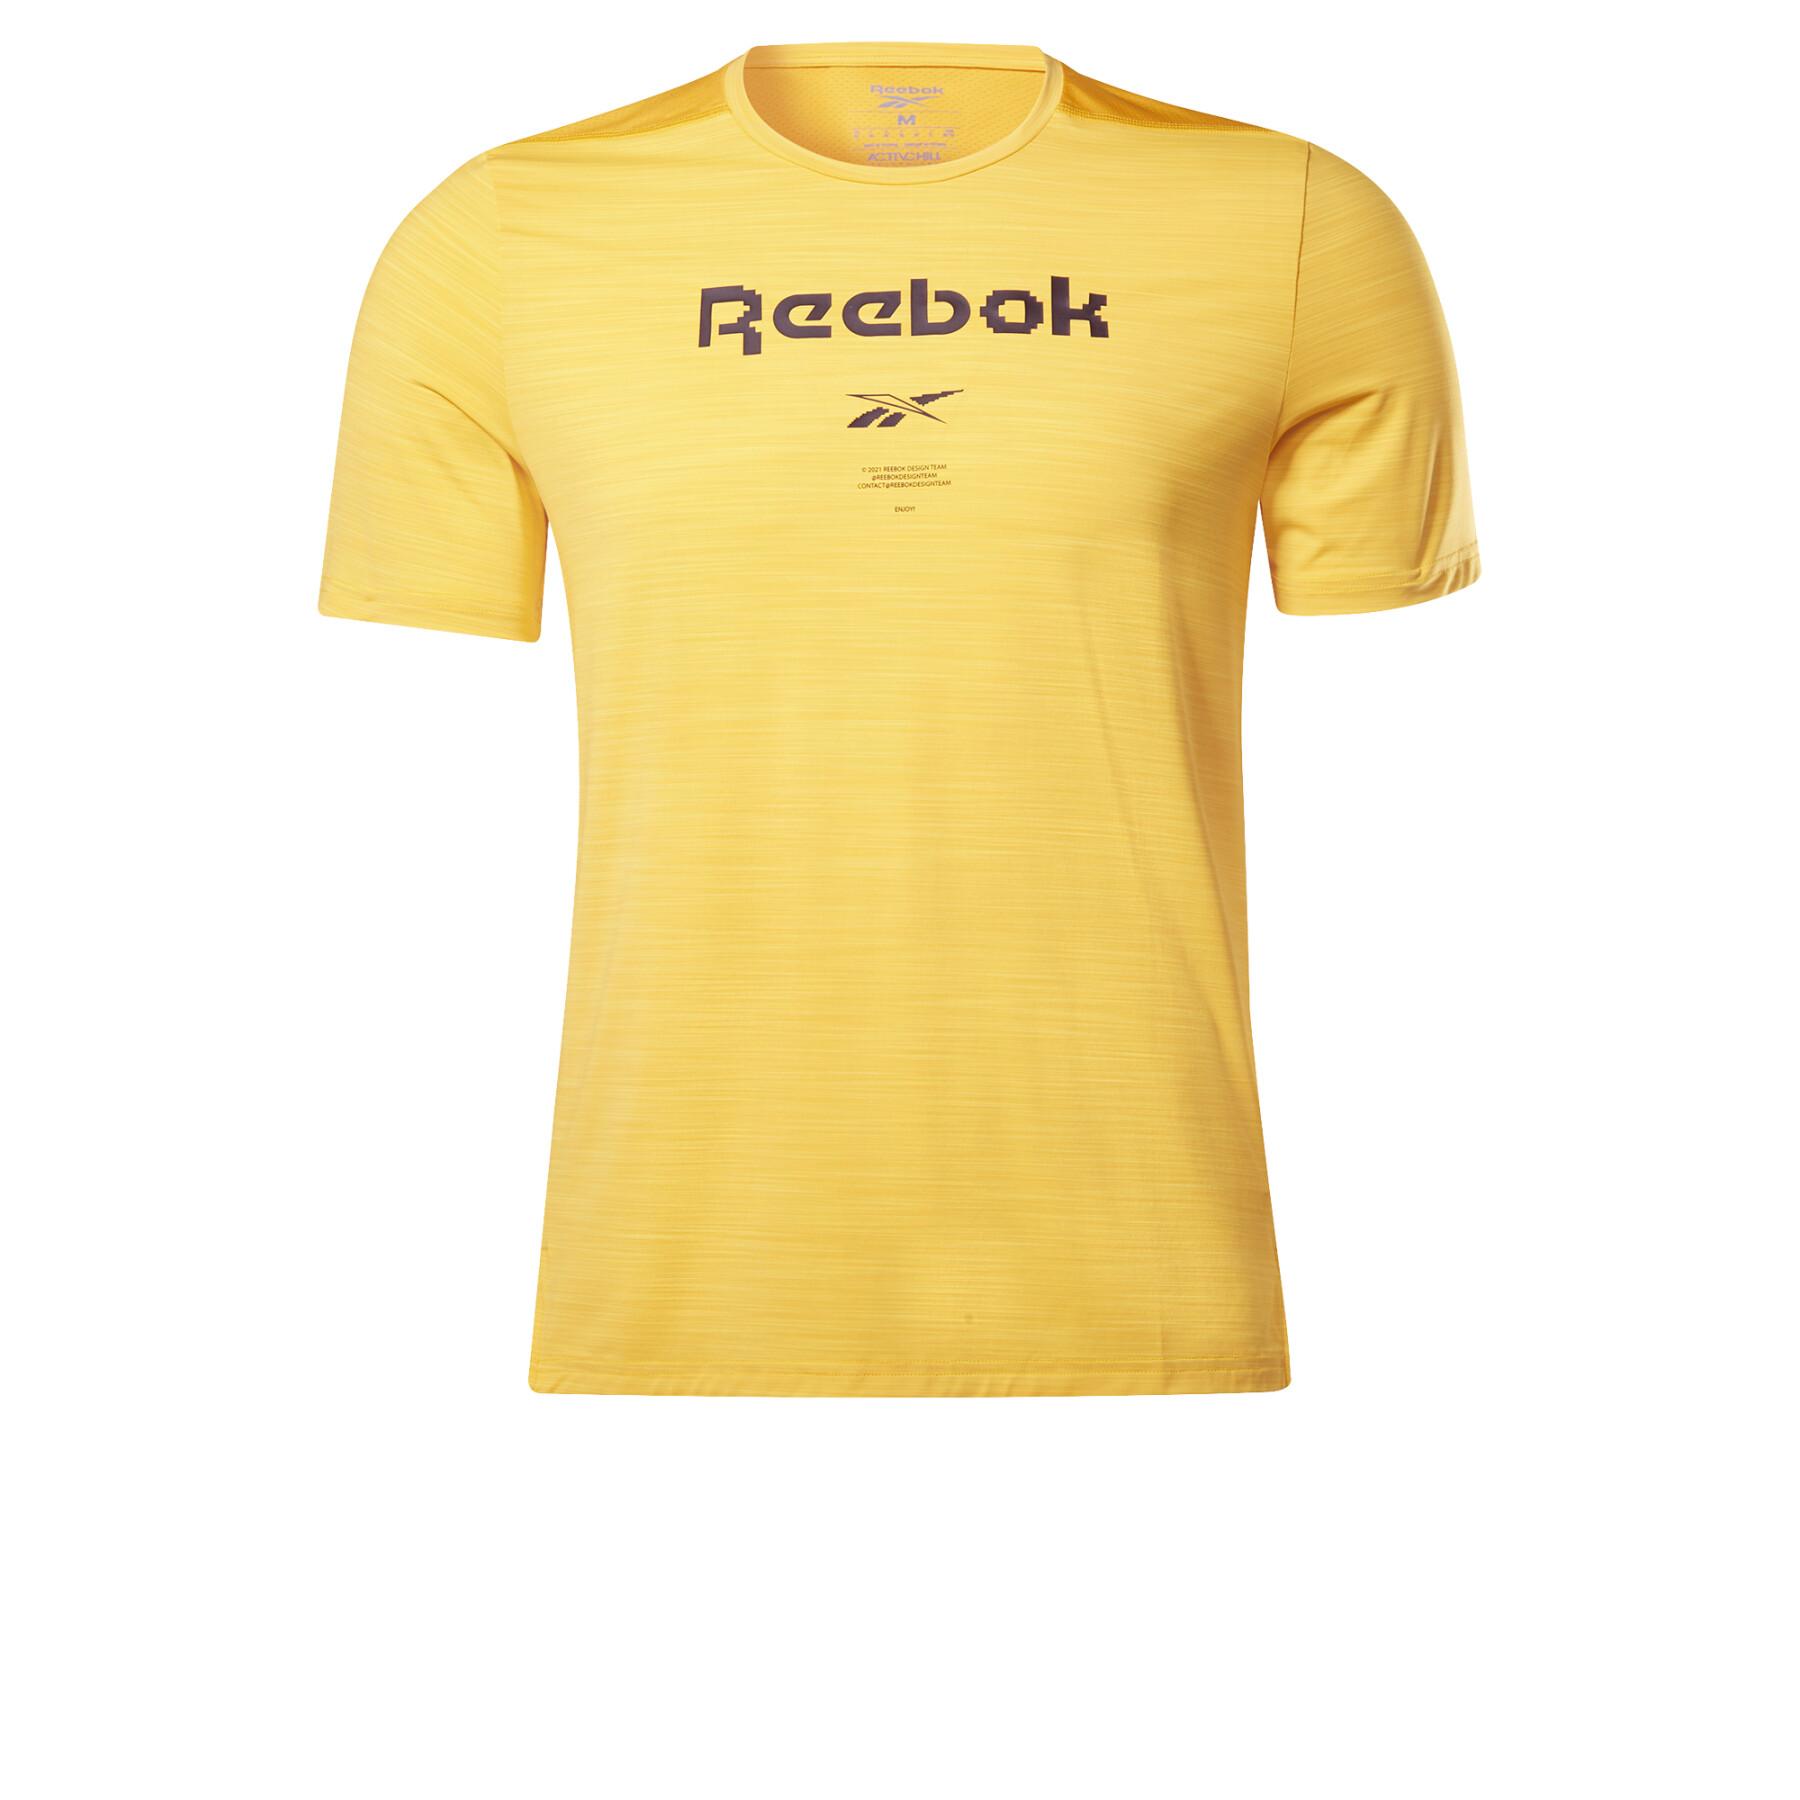 Koszulka Reebok Activchill Graphic Move